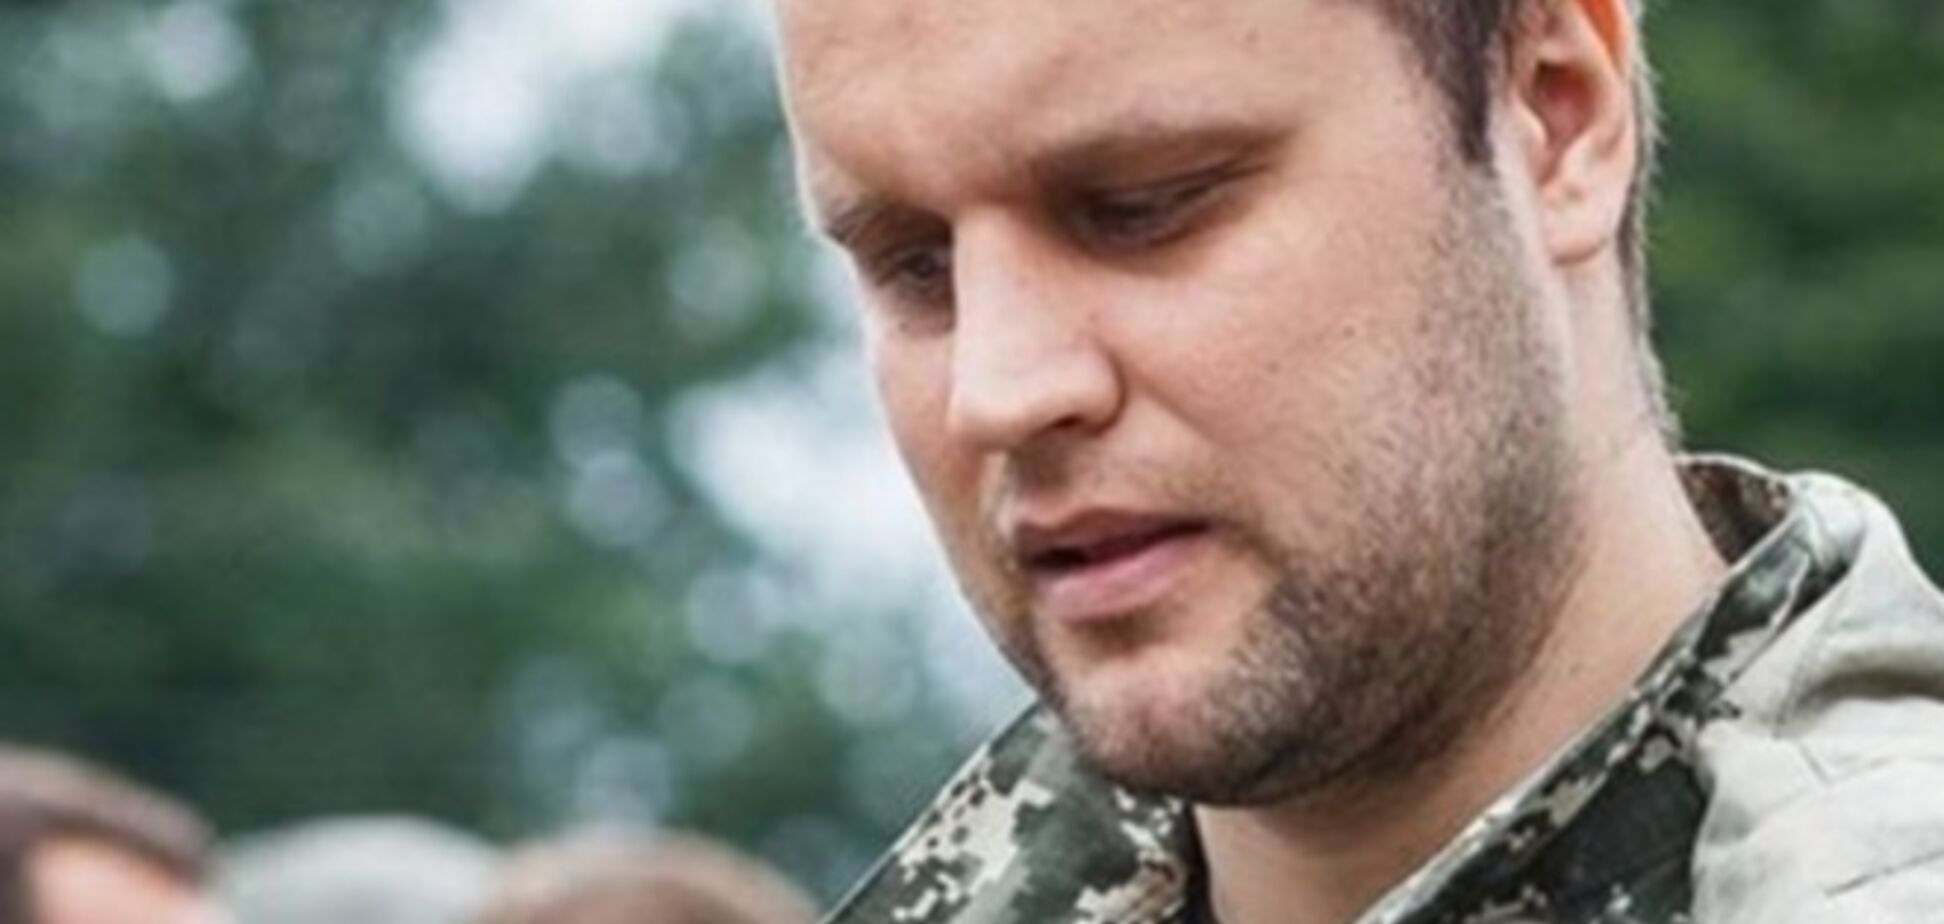 Губарев о своем похищении: это сделали чеченцы… Теперь ожидаю контакта с Кадыровым